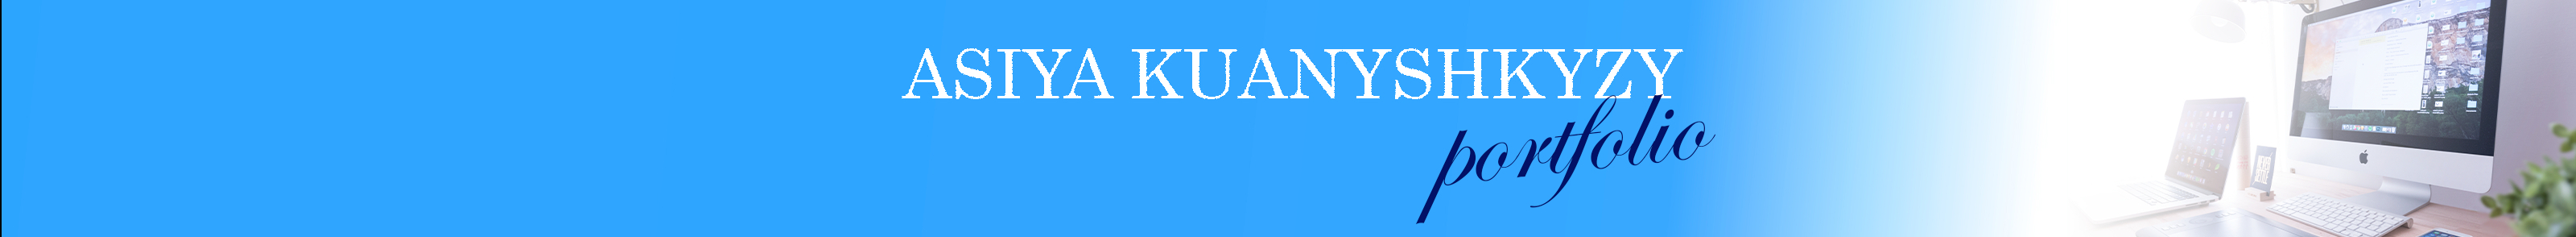 Asiya Kuanyshkyzy's profile banner